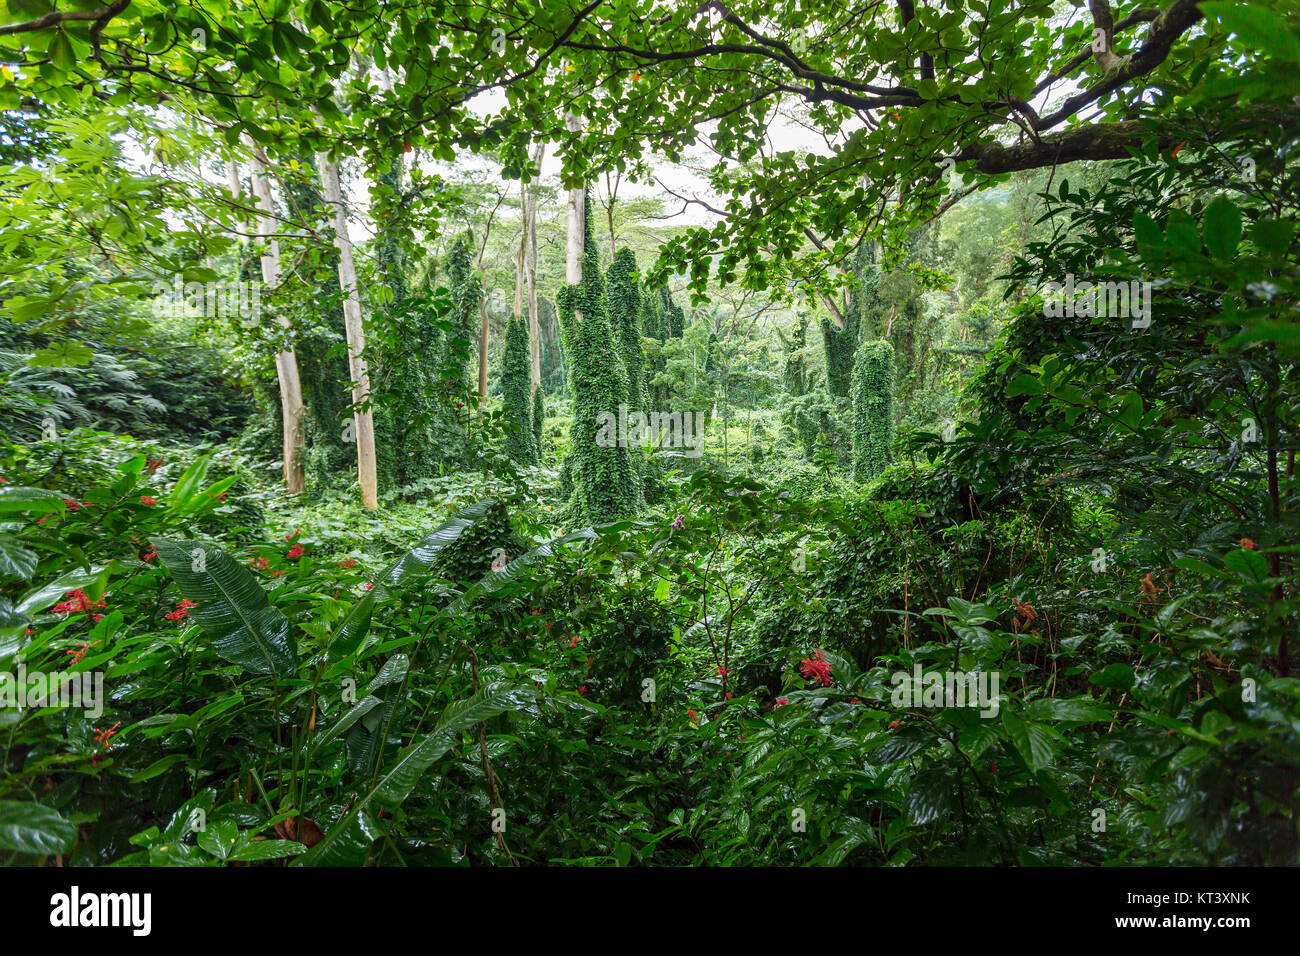 La forêt tropicale dense vert verdoyant le long de la végétation Manoa Falls Trail dans la vallée de Manoa, Oahu, Hawaii, USA Banque D'Images